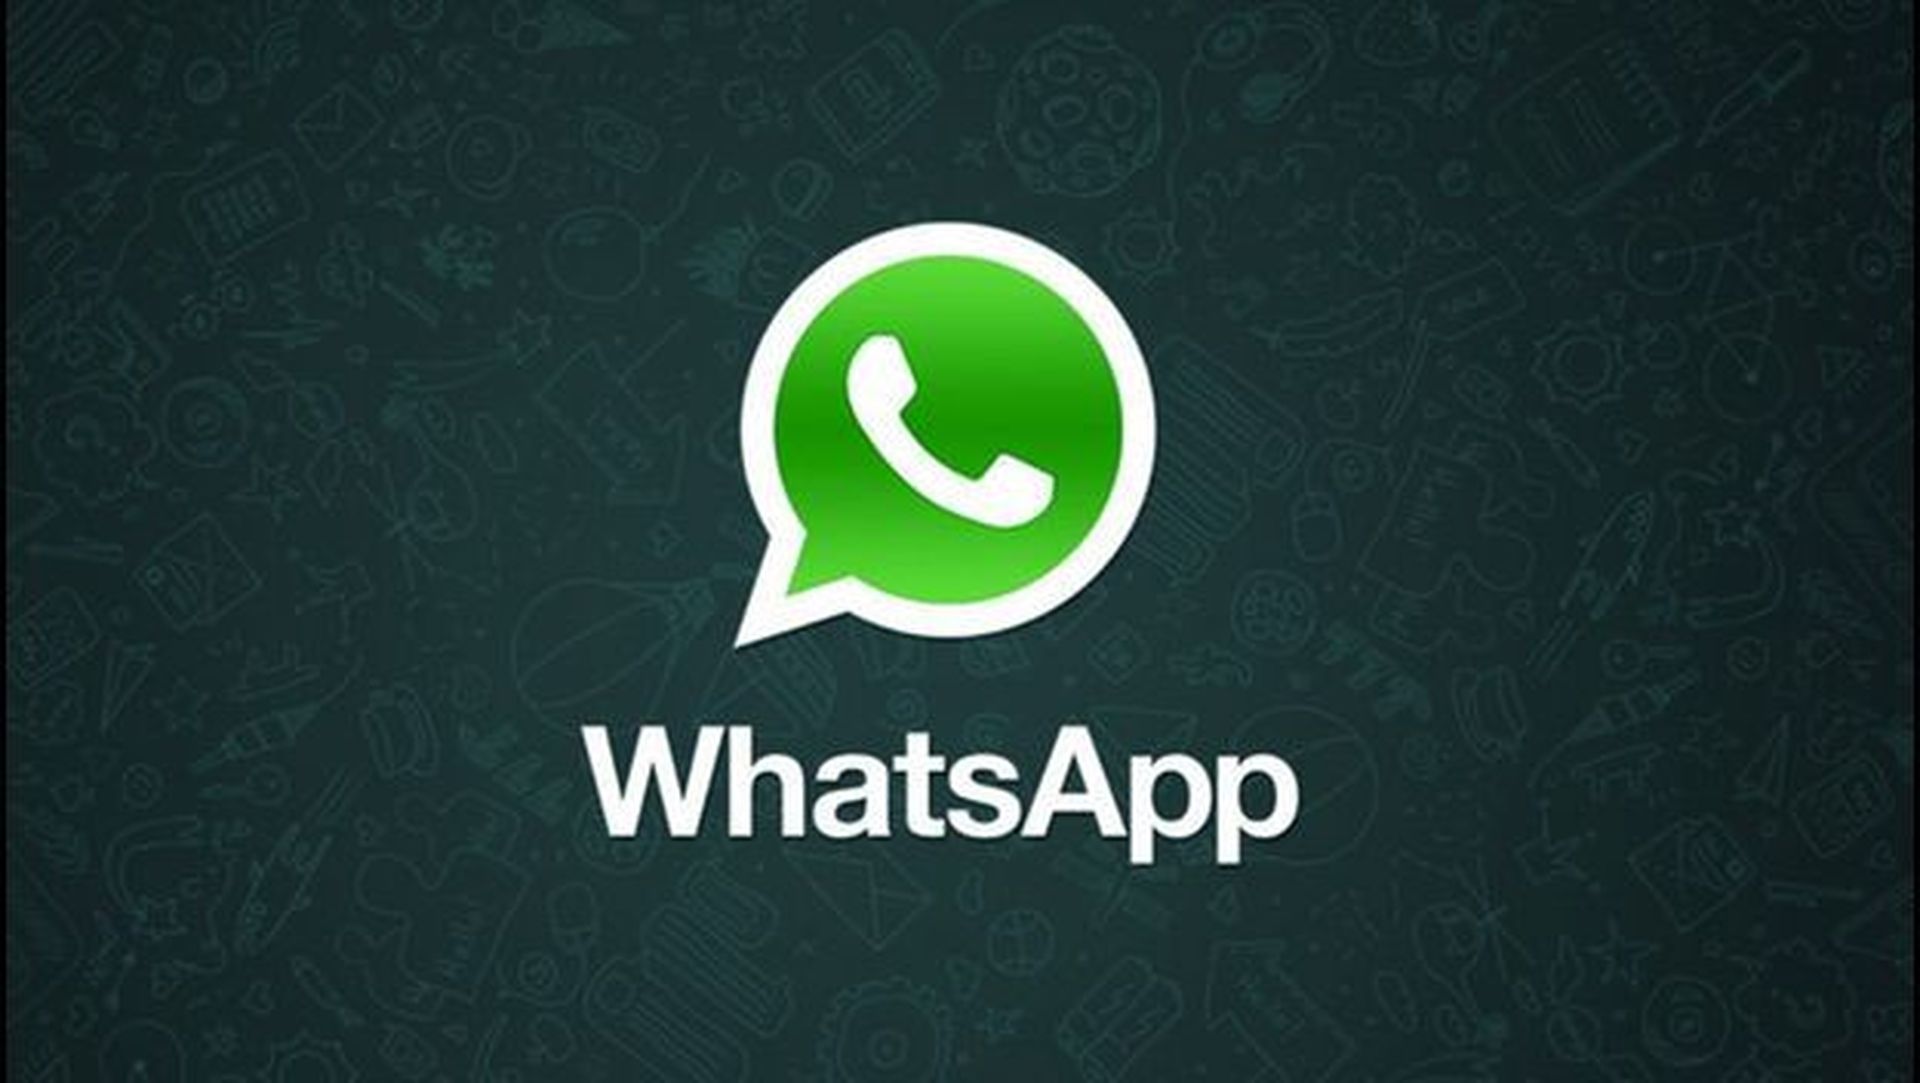 Whatsapp Web Se Actualiza Y Estas Son Sus Nuevas Funciones 8282